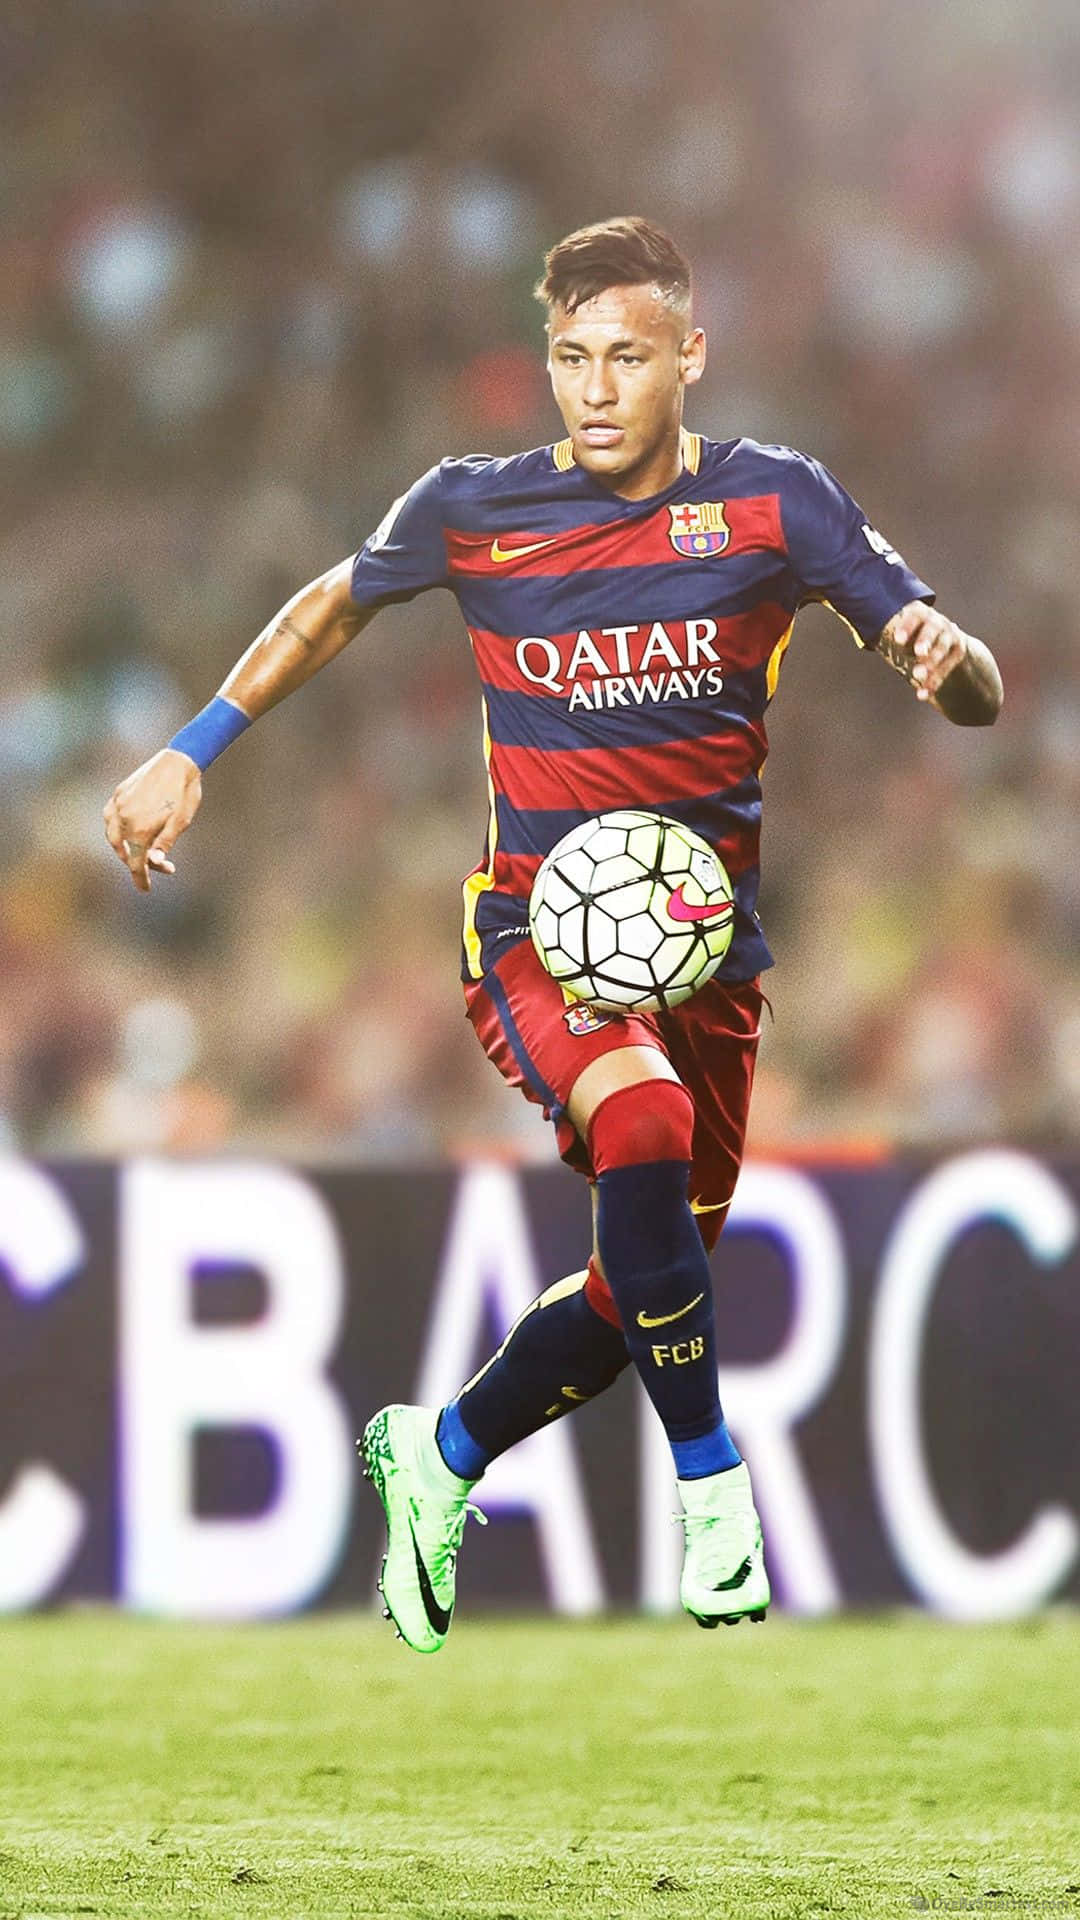 Neymarcon El Balón En El Aire En Iphone Fondo de pantalla